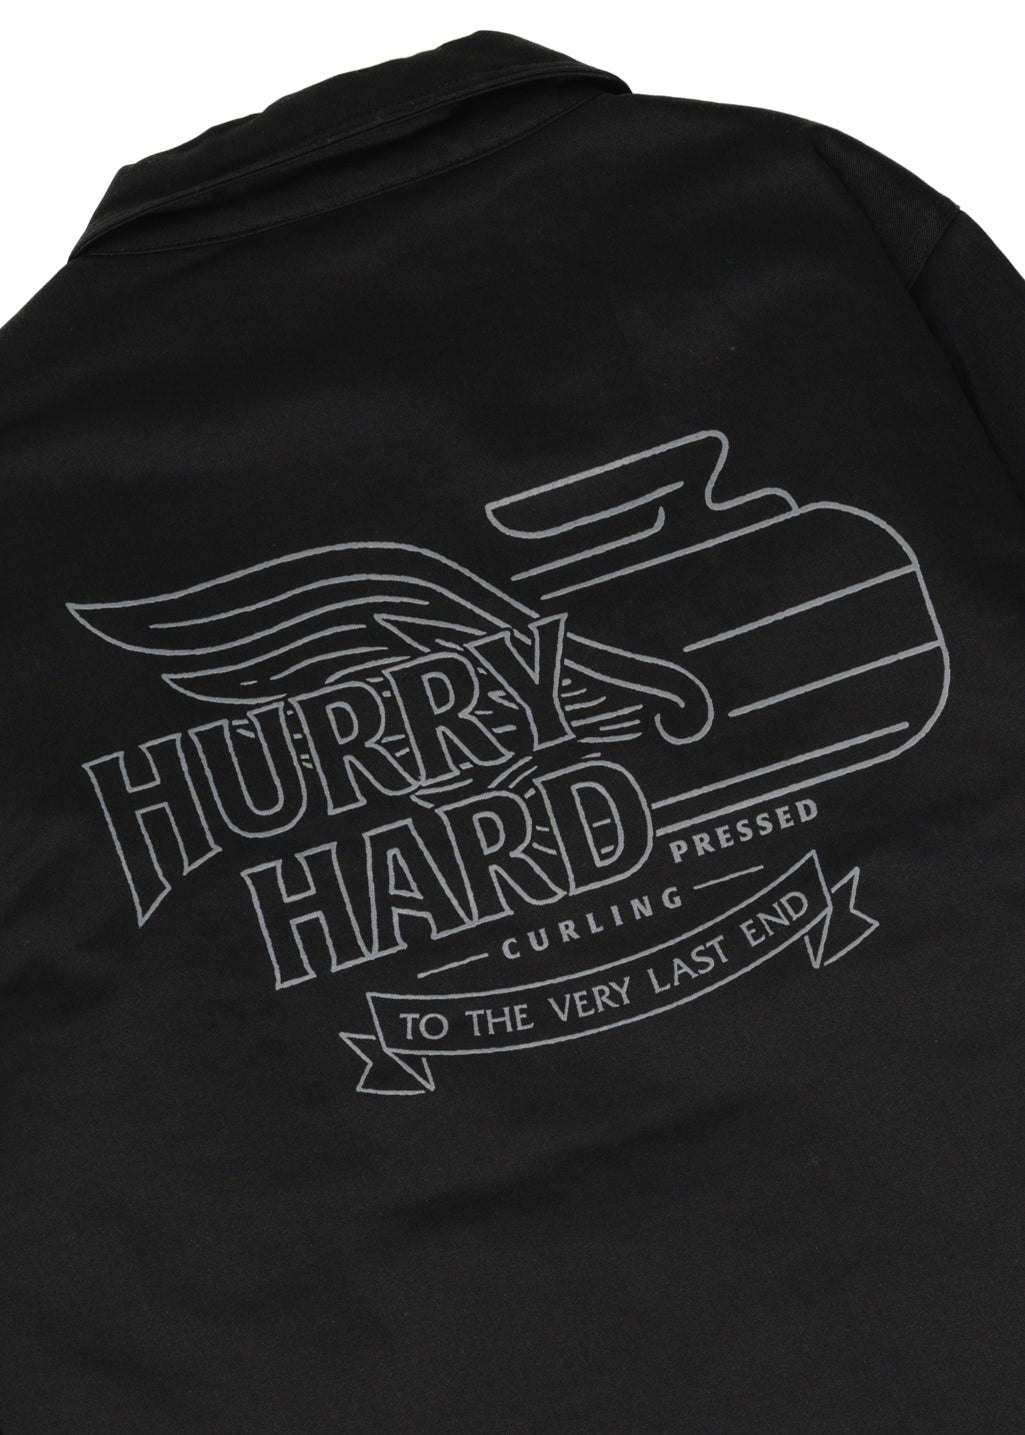 Hurry Hard v2 Jacket | Black | Unisex - Hardpressed Print Studio Inc.